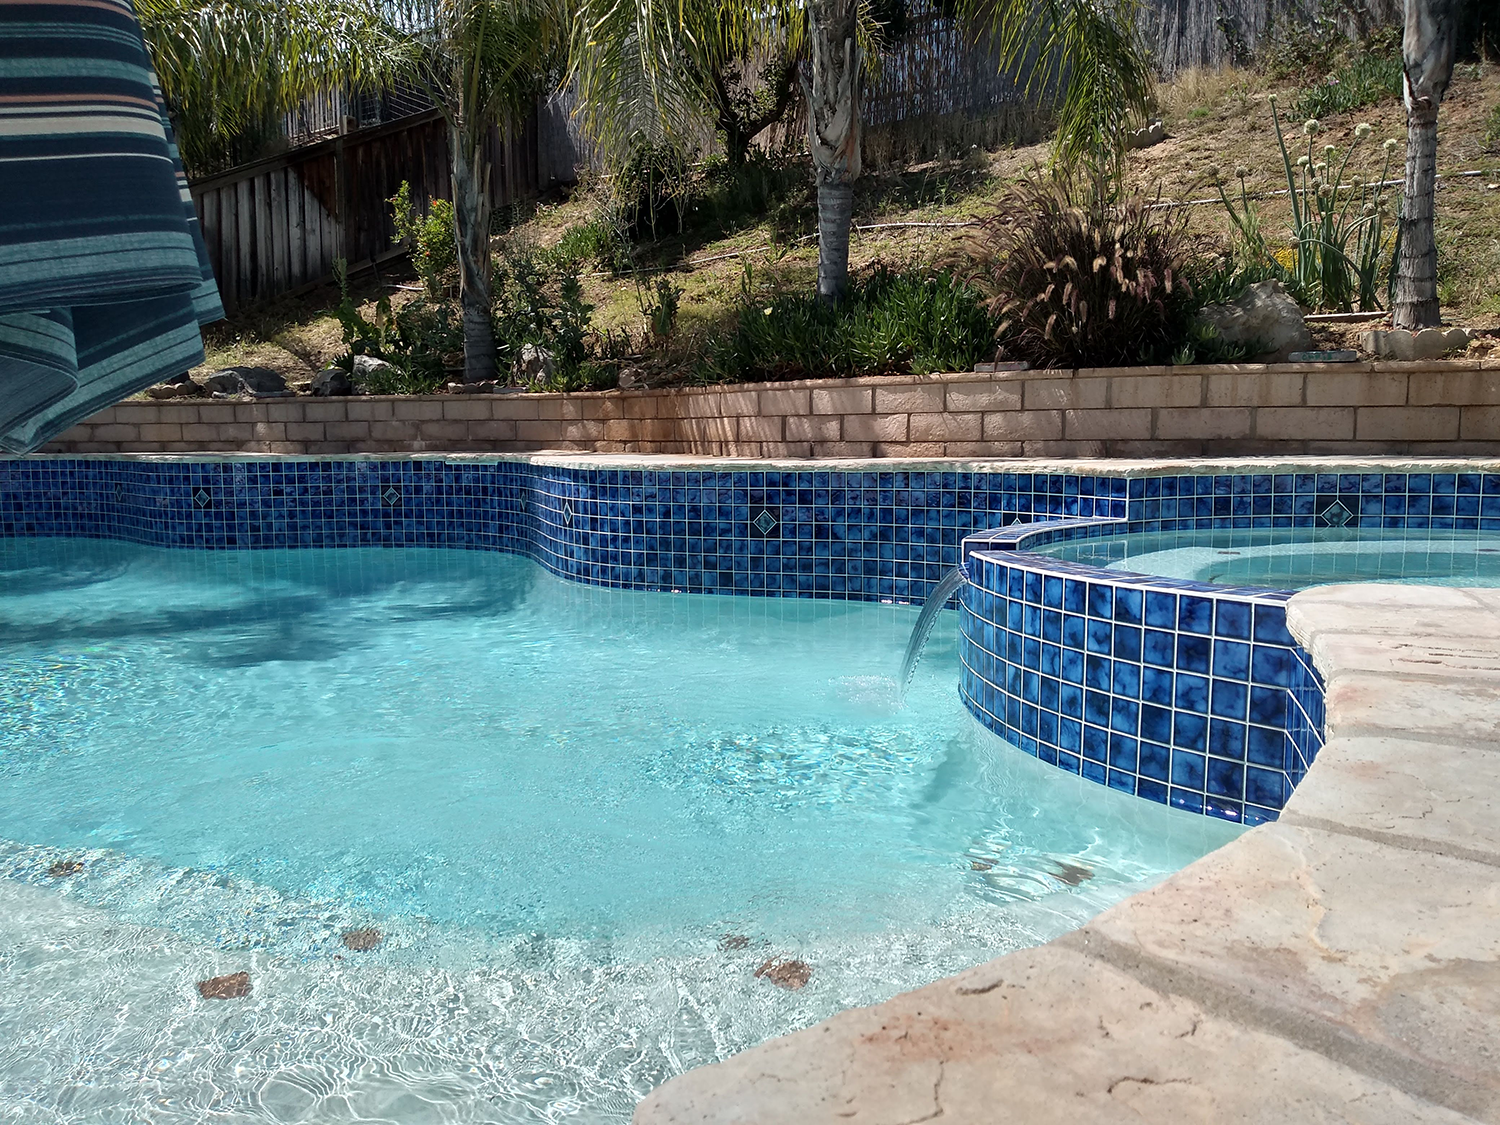 Pool restoration re-tile and repair